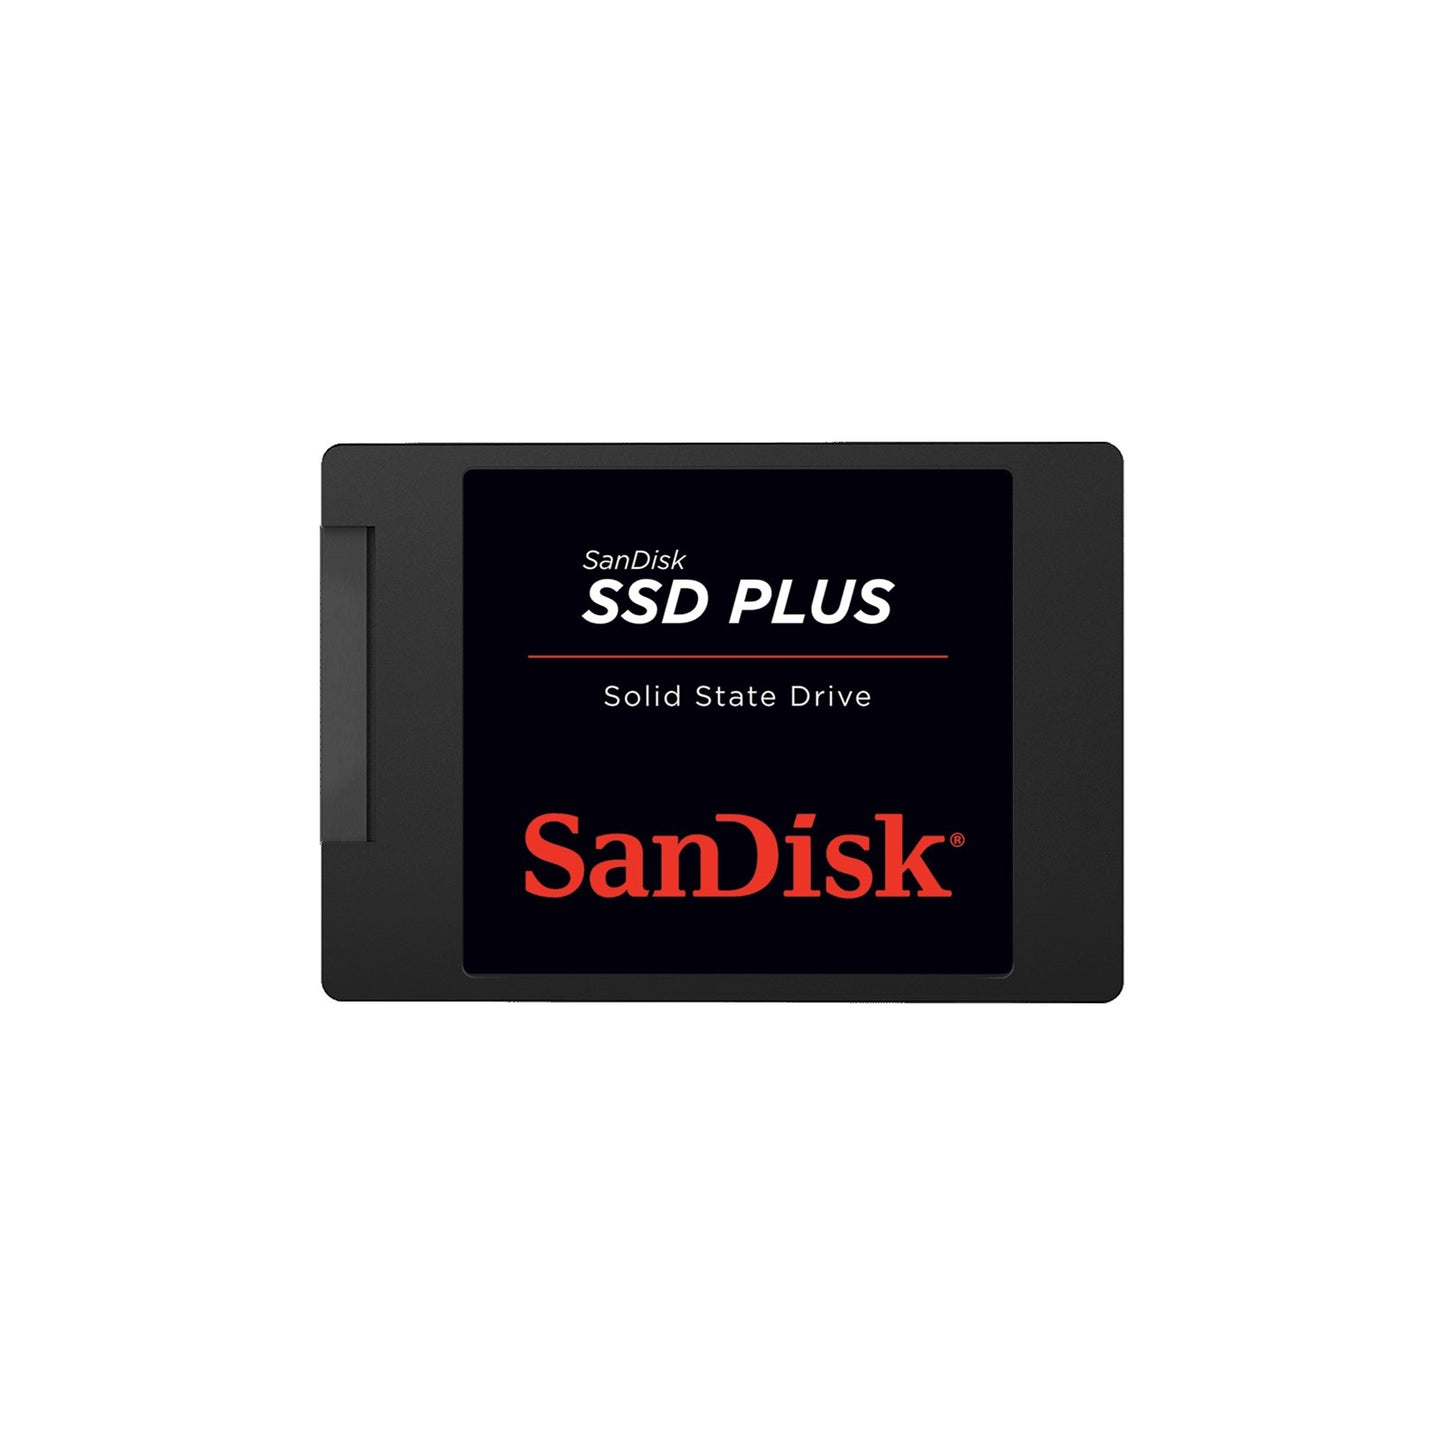 SanDisk SSD Plus 1TB 2.5" SATA III PC SSD Solid State Drive SDSSDA-1T00-G26